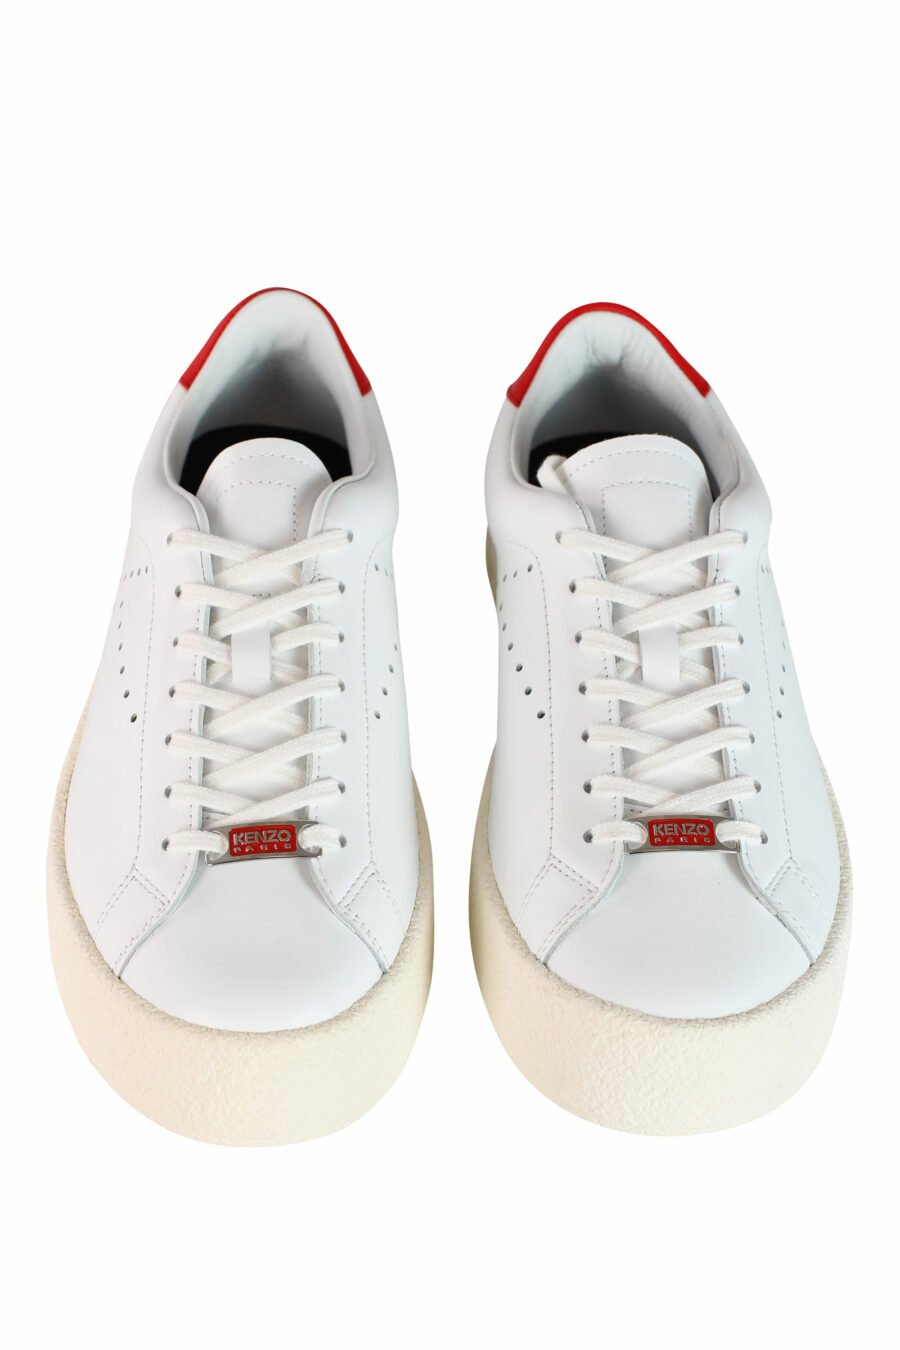 Zapatillas blancas "kenzoswing" con detalle rojo y logo - IMG 3556